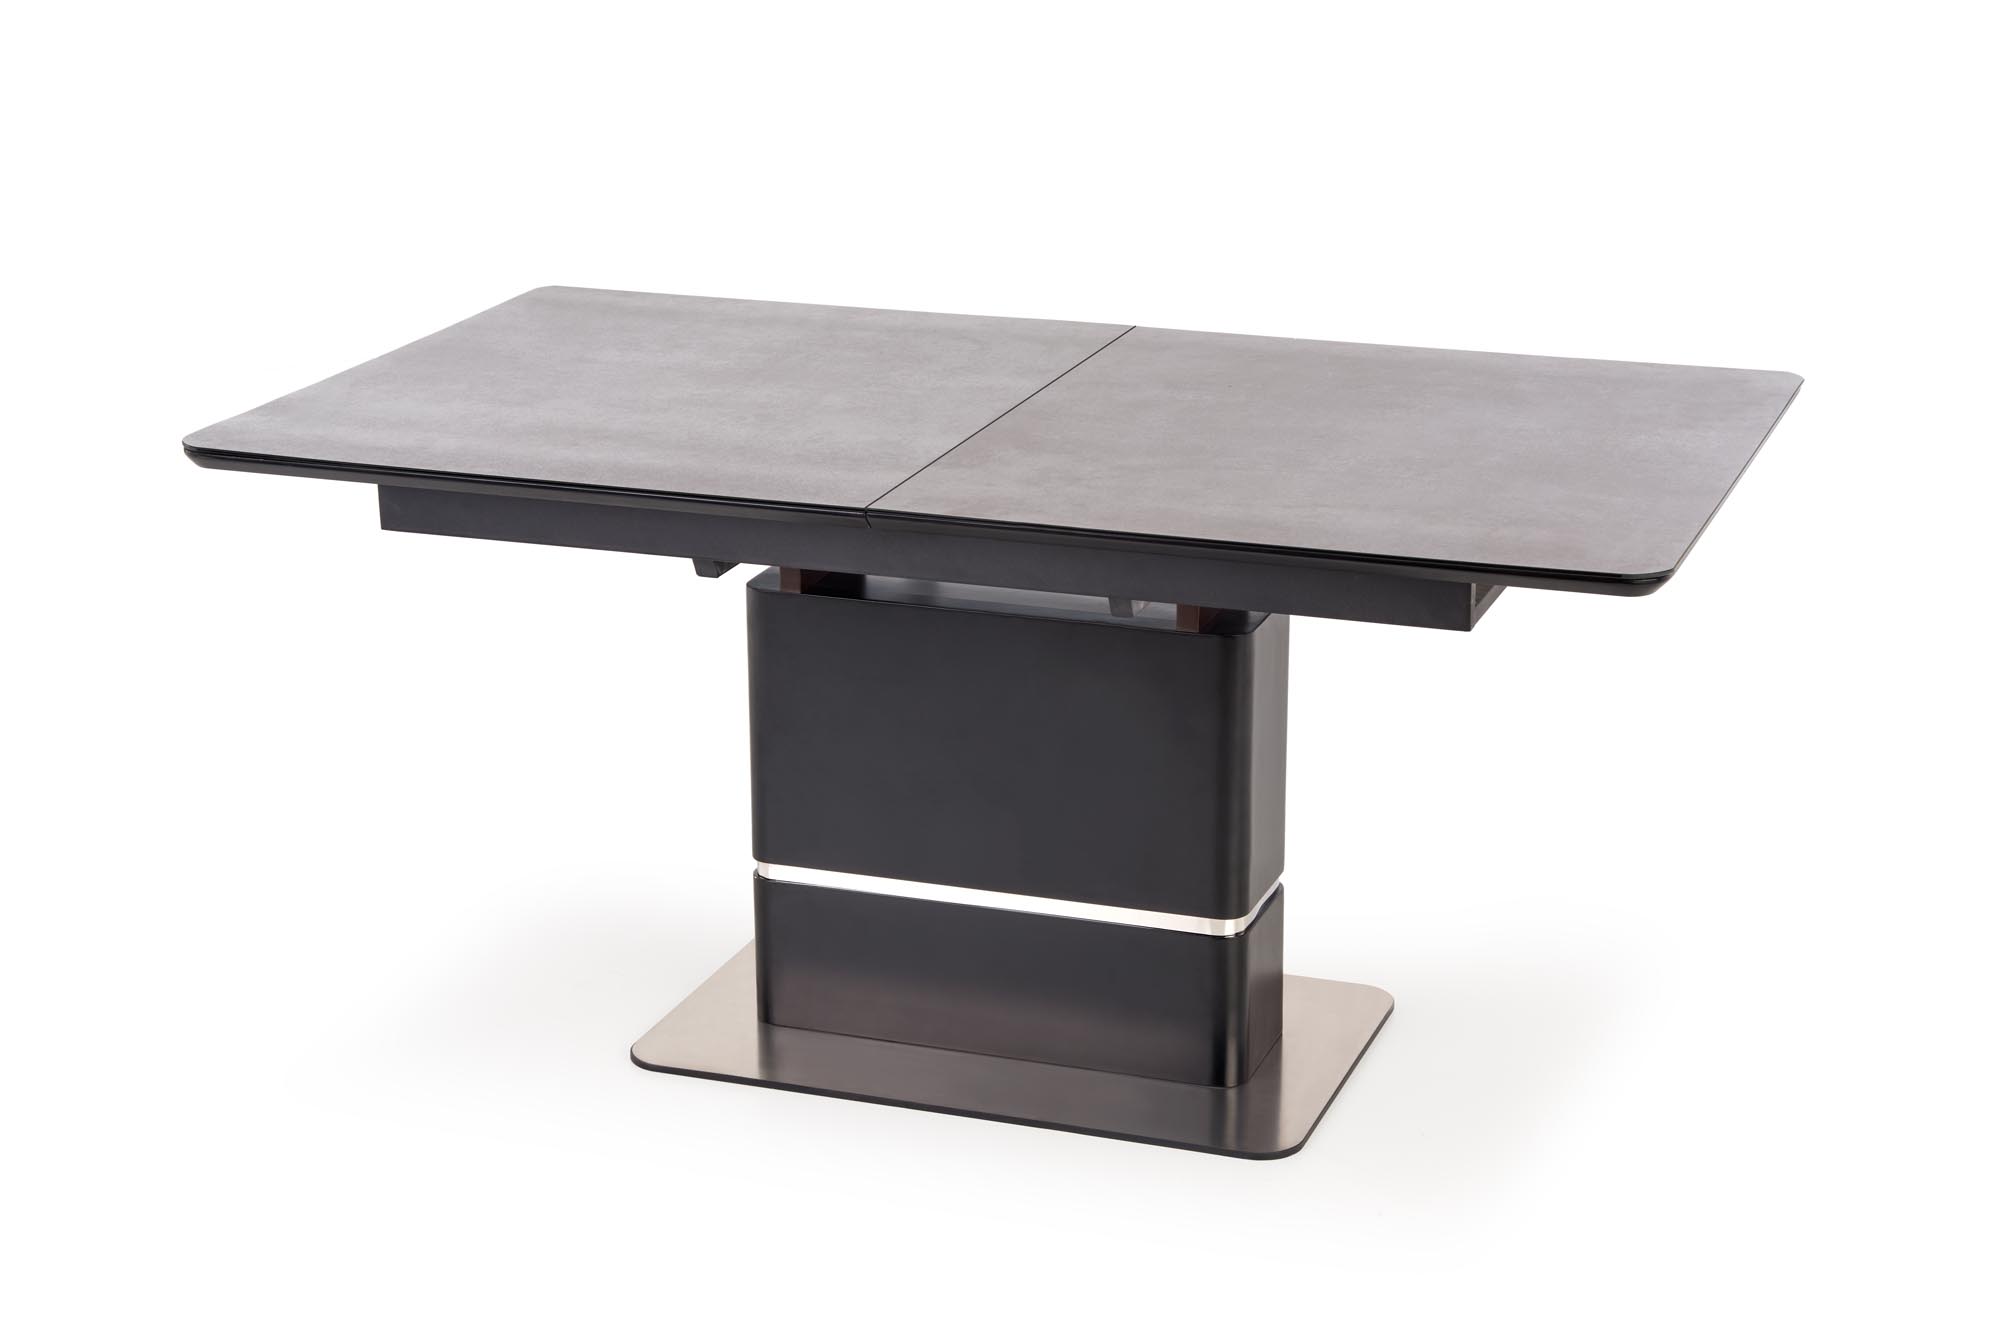 MARTIN Stůl rozkládací Deska - tmavý popel, noga - Černý martin stůl rozkládací Deska - tmavý popel, noga - Černý